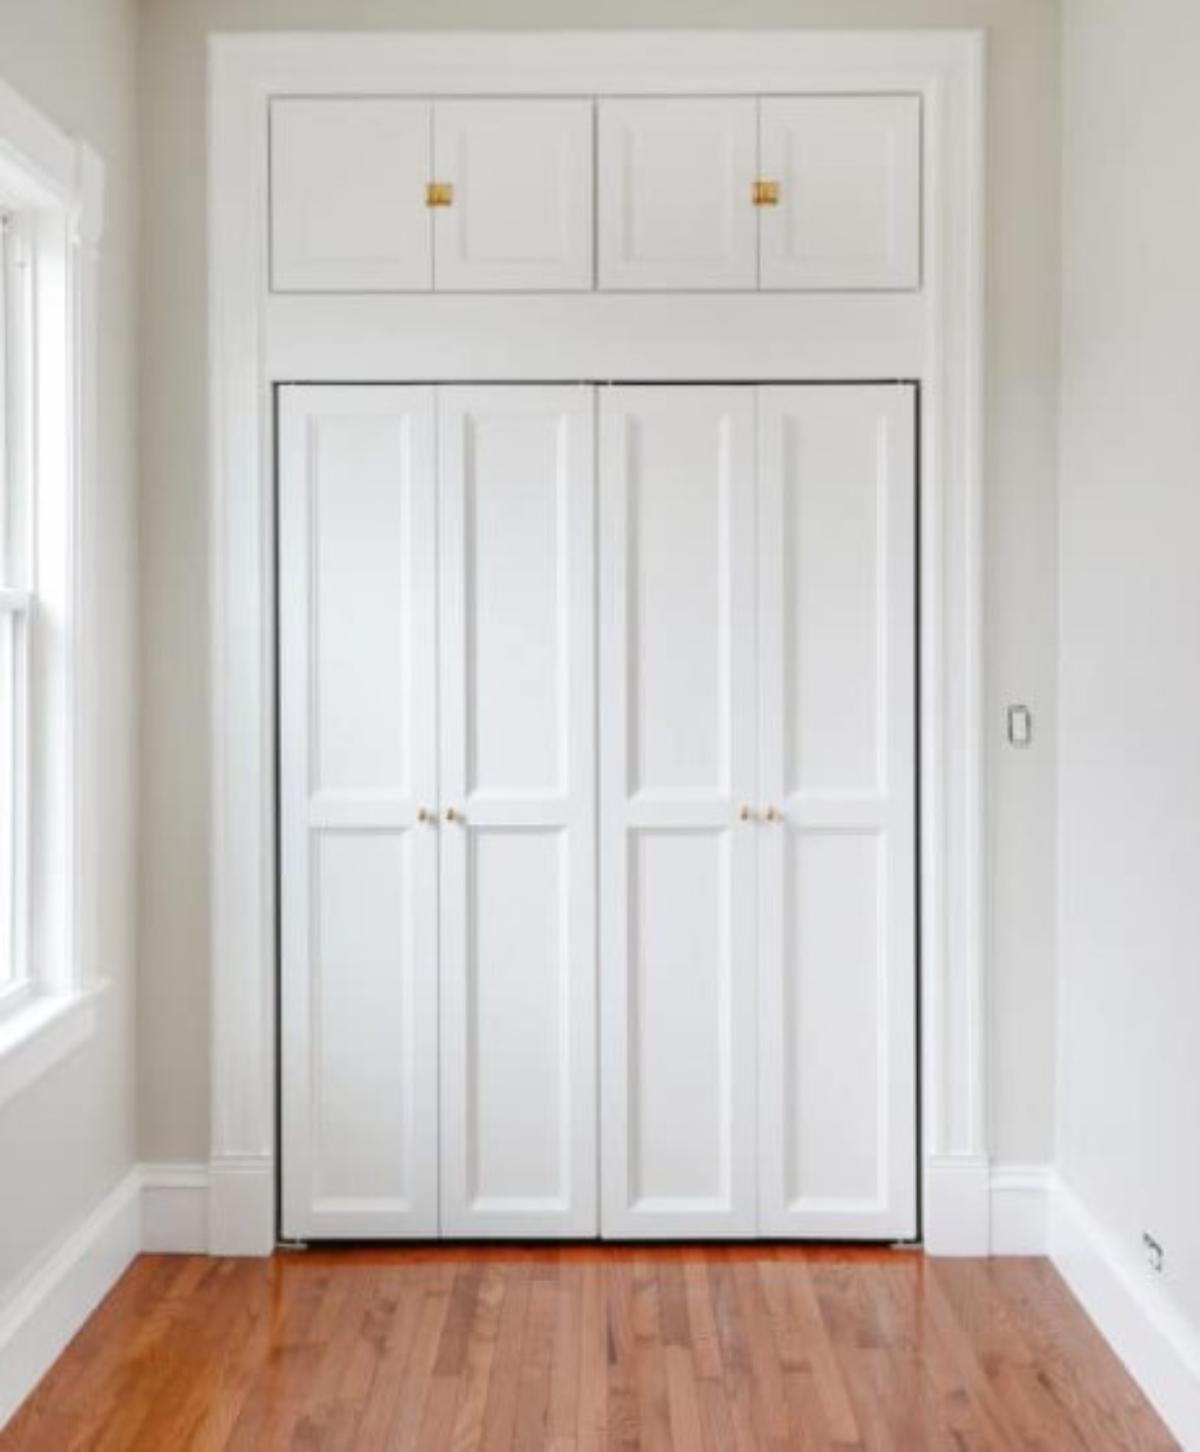 DIY Extra Hunky Trim For Bi-Fold Doors